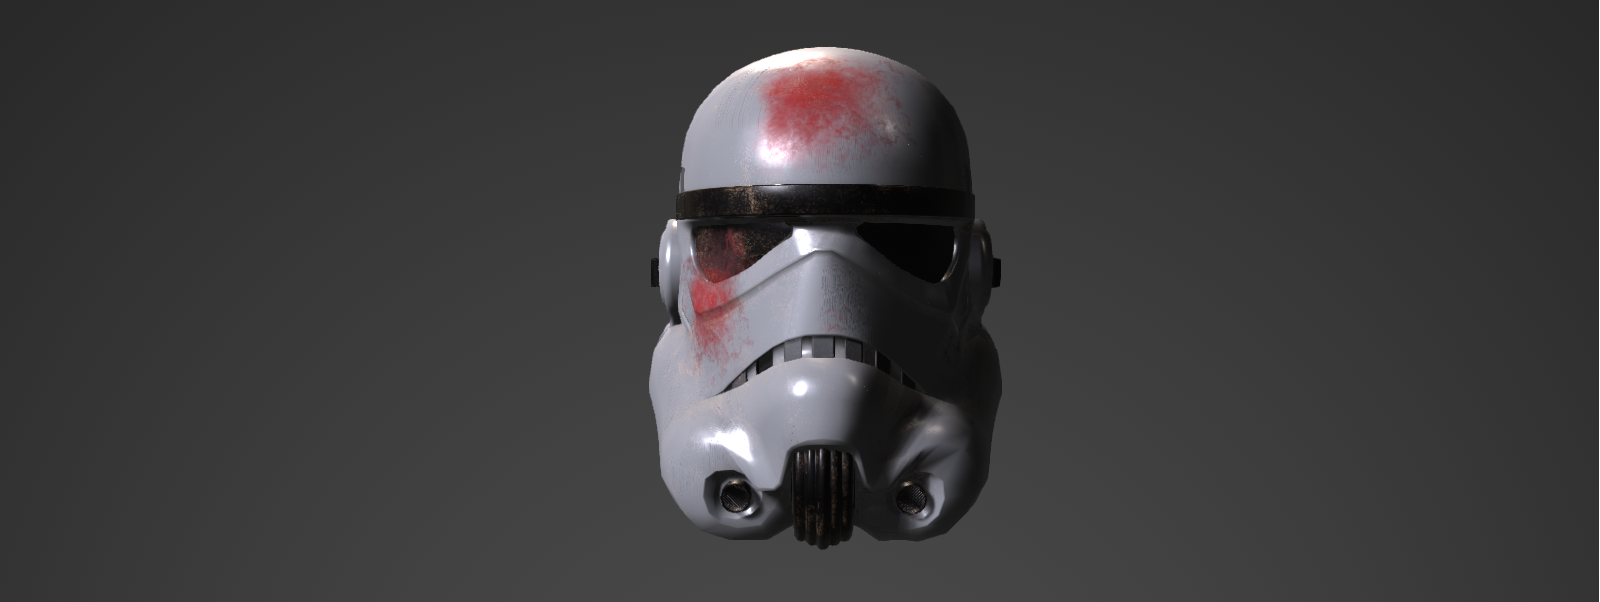 StormTrooper Helmet Textured Blo